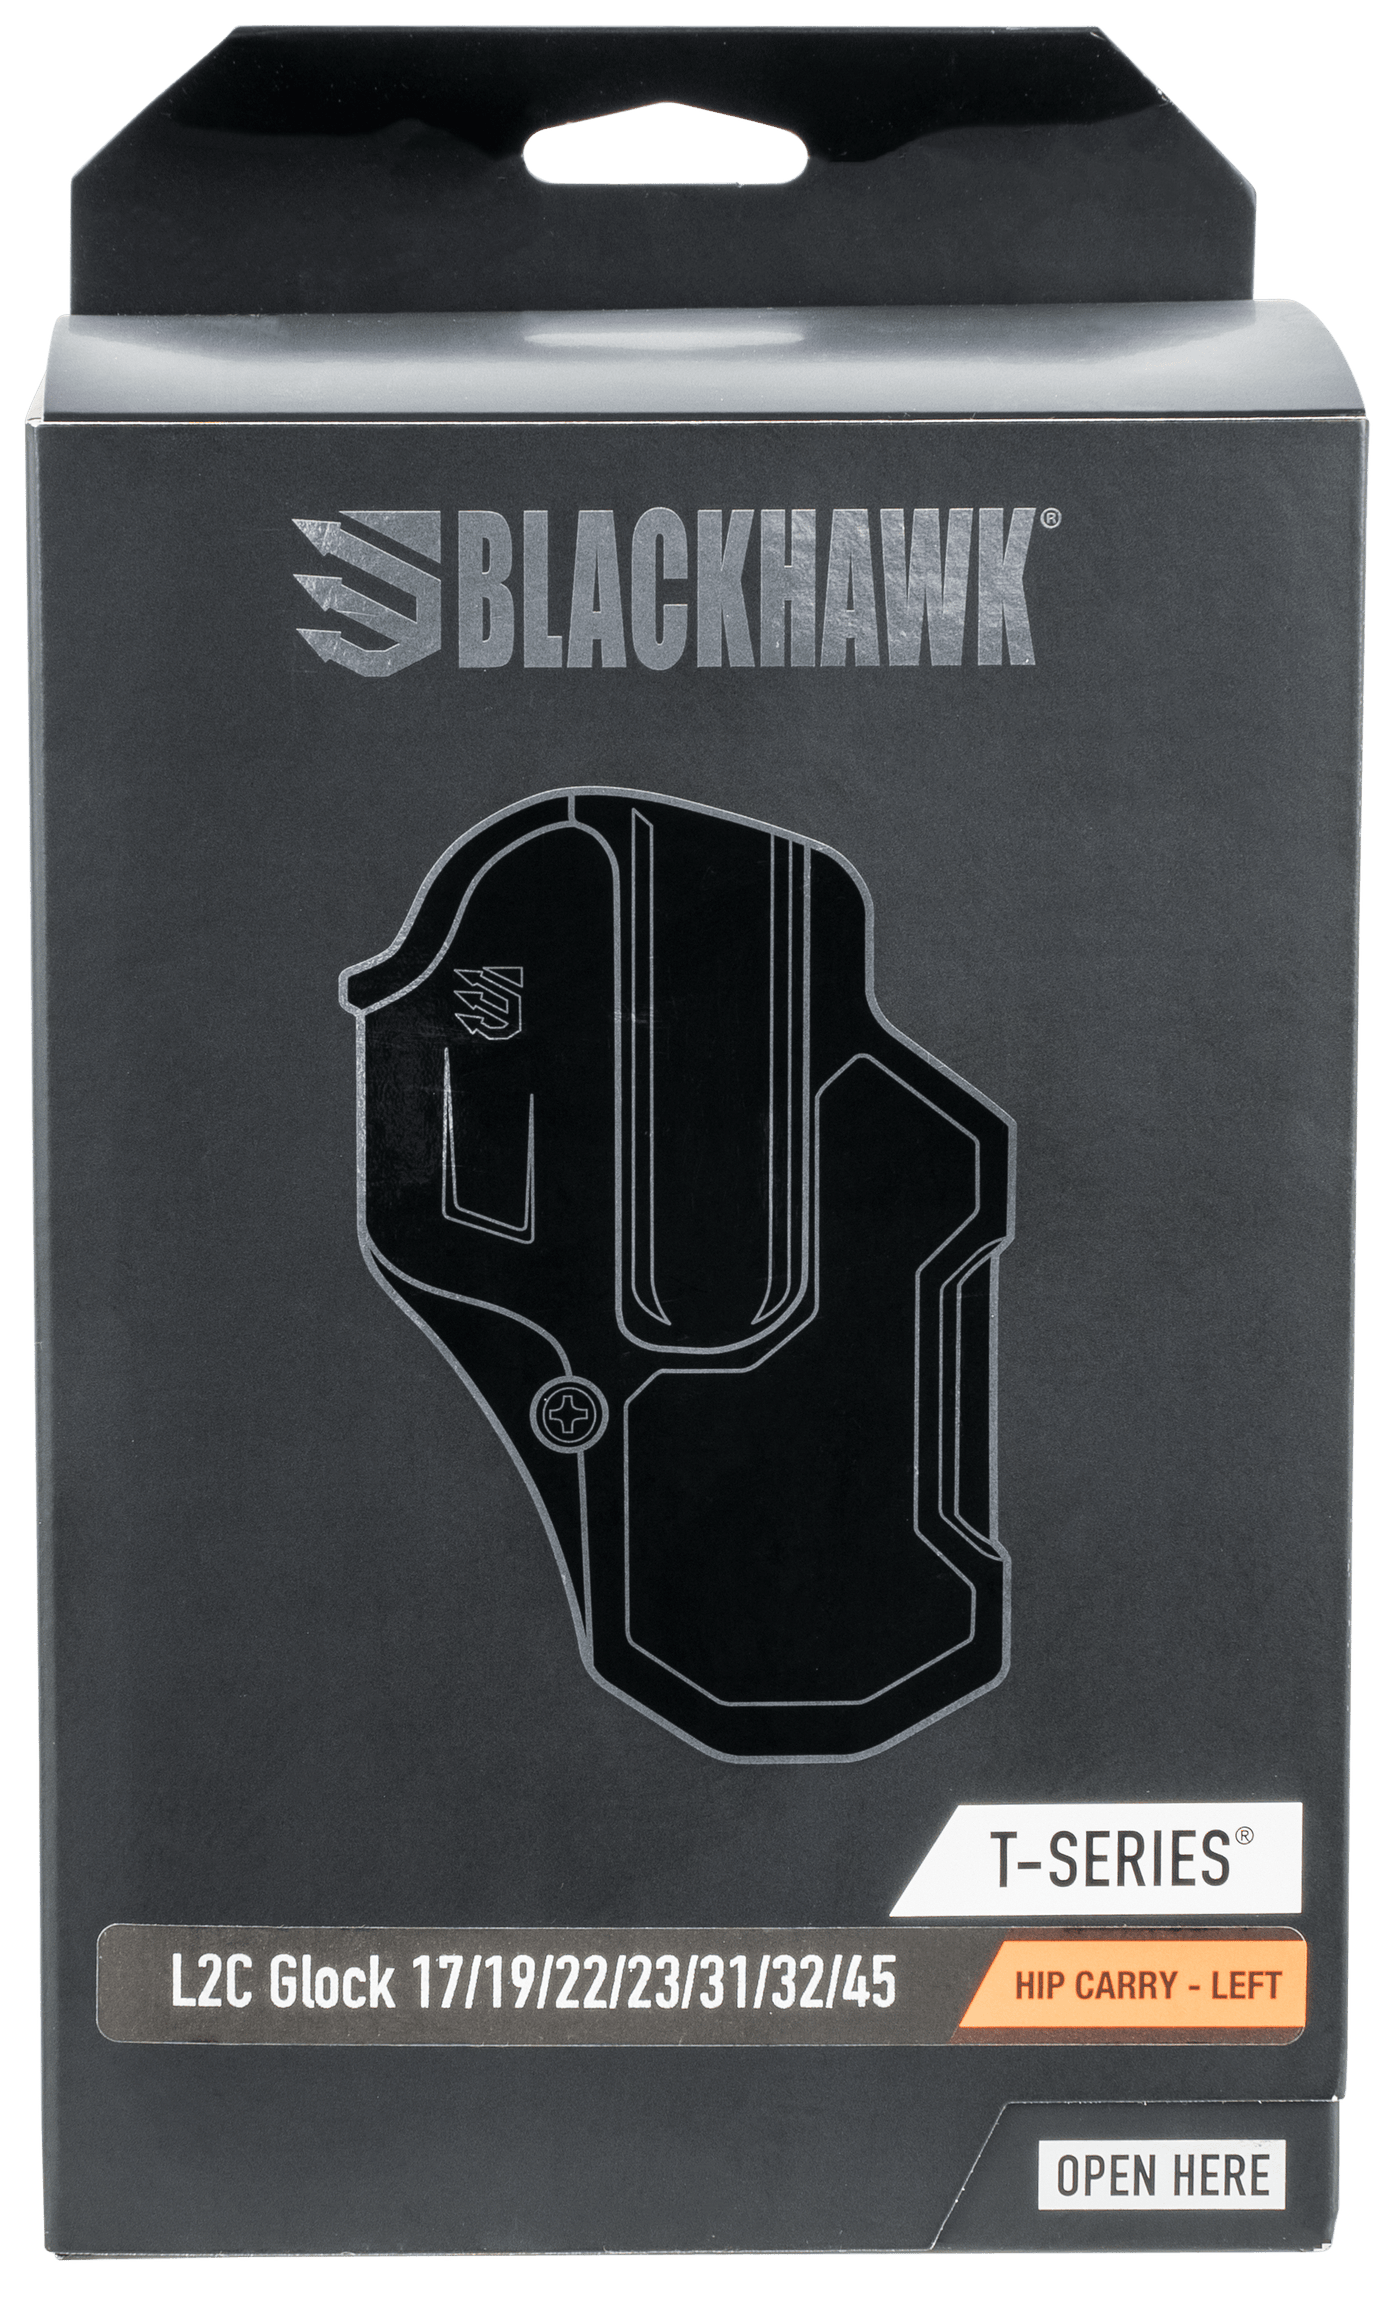 Blackhawk Blackhawk T-series, Bhwk 410700bkl T-series L2c Glock 17 Black Lh Firearm Accessories